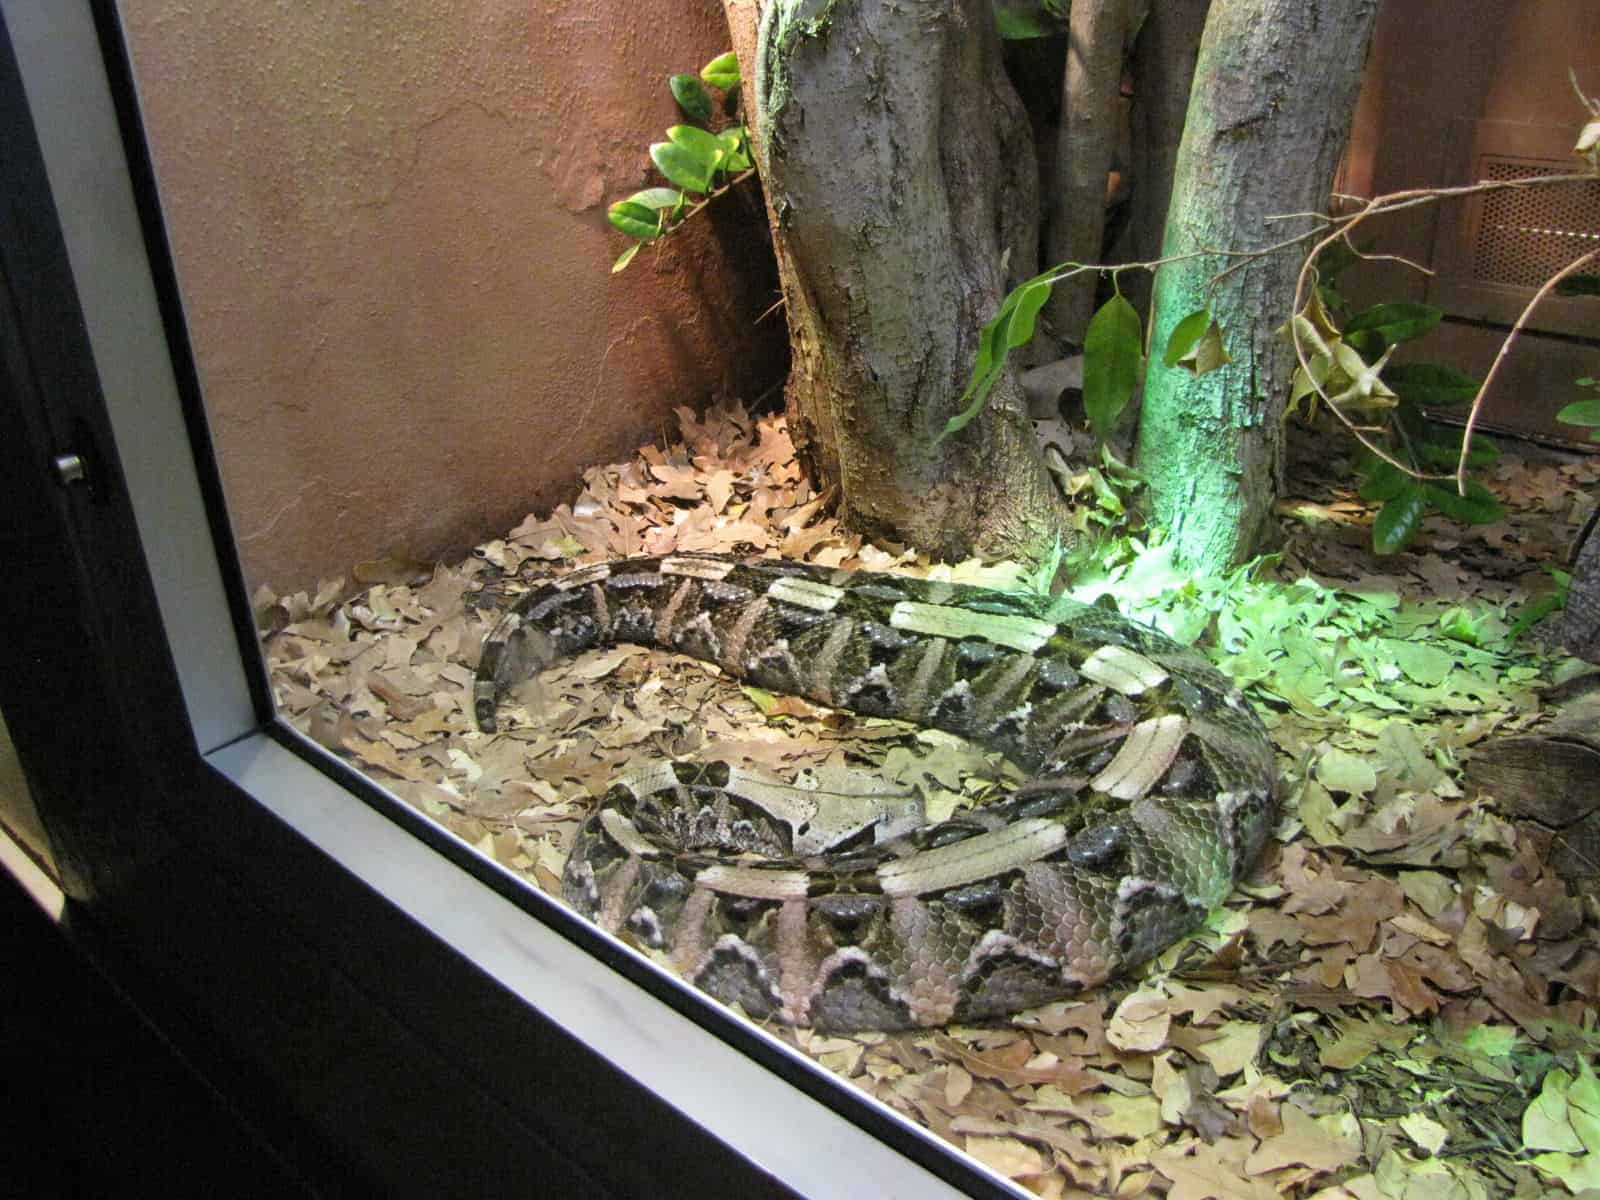 Reptile at Houston Zoo in Houston TX